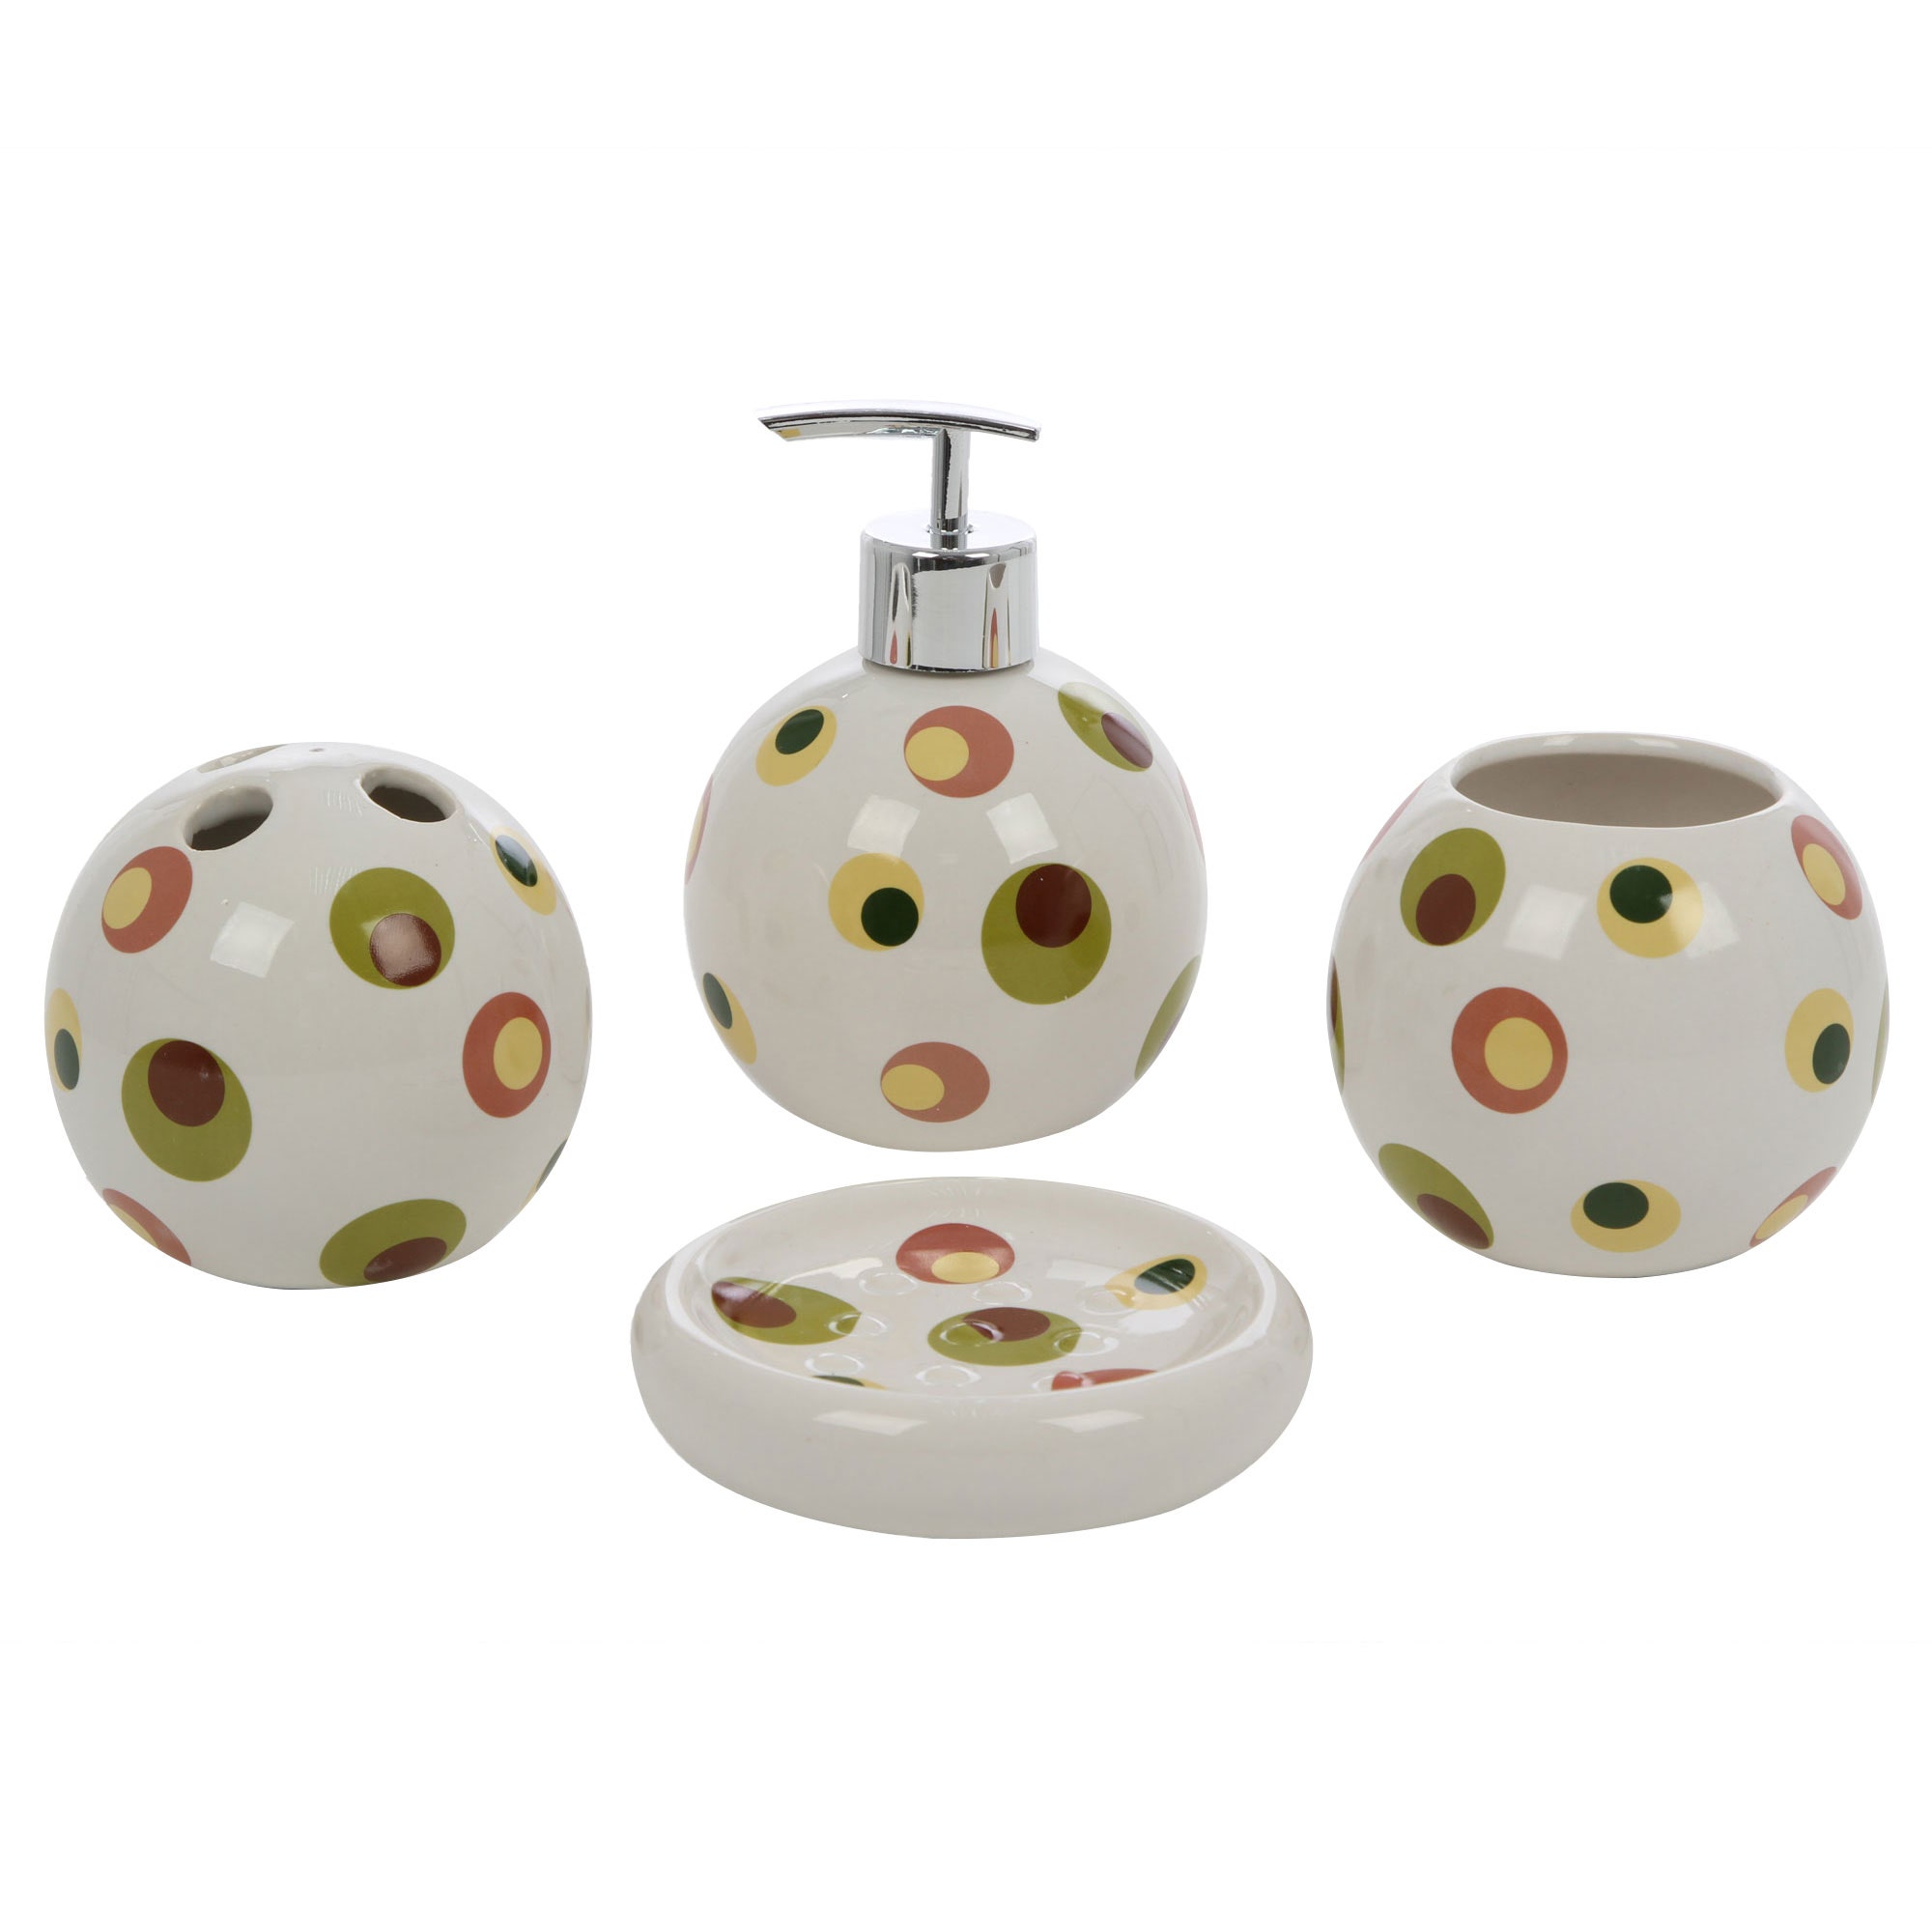 Set accesorii pentru baie, Kadda 1106243, ceramica, 4 piese, model cu buline